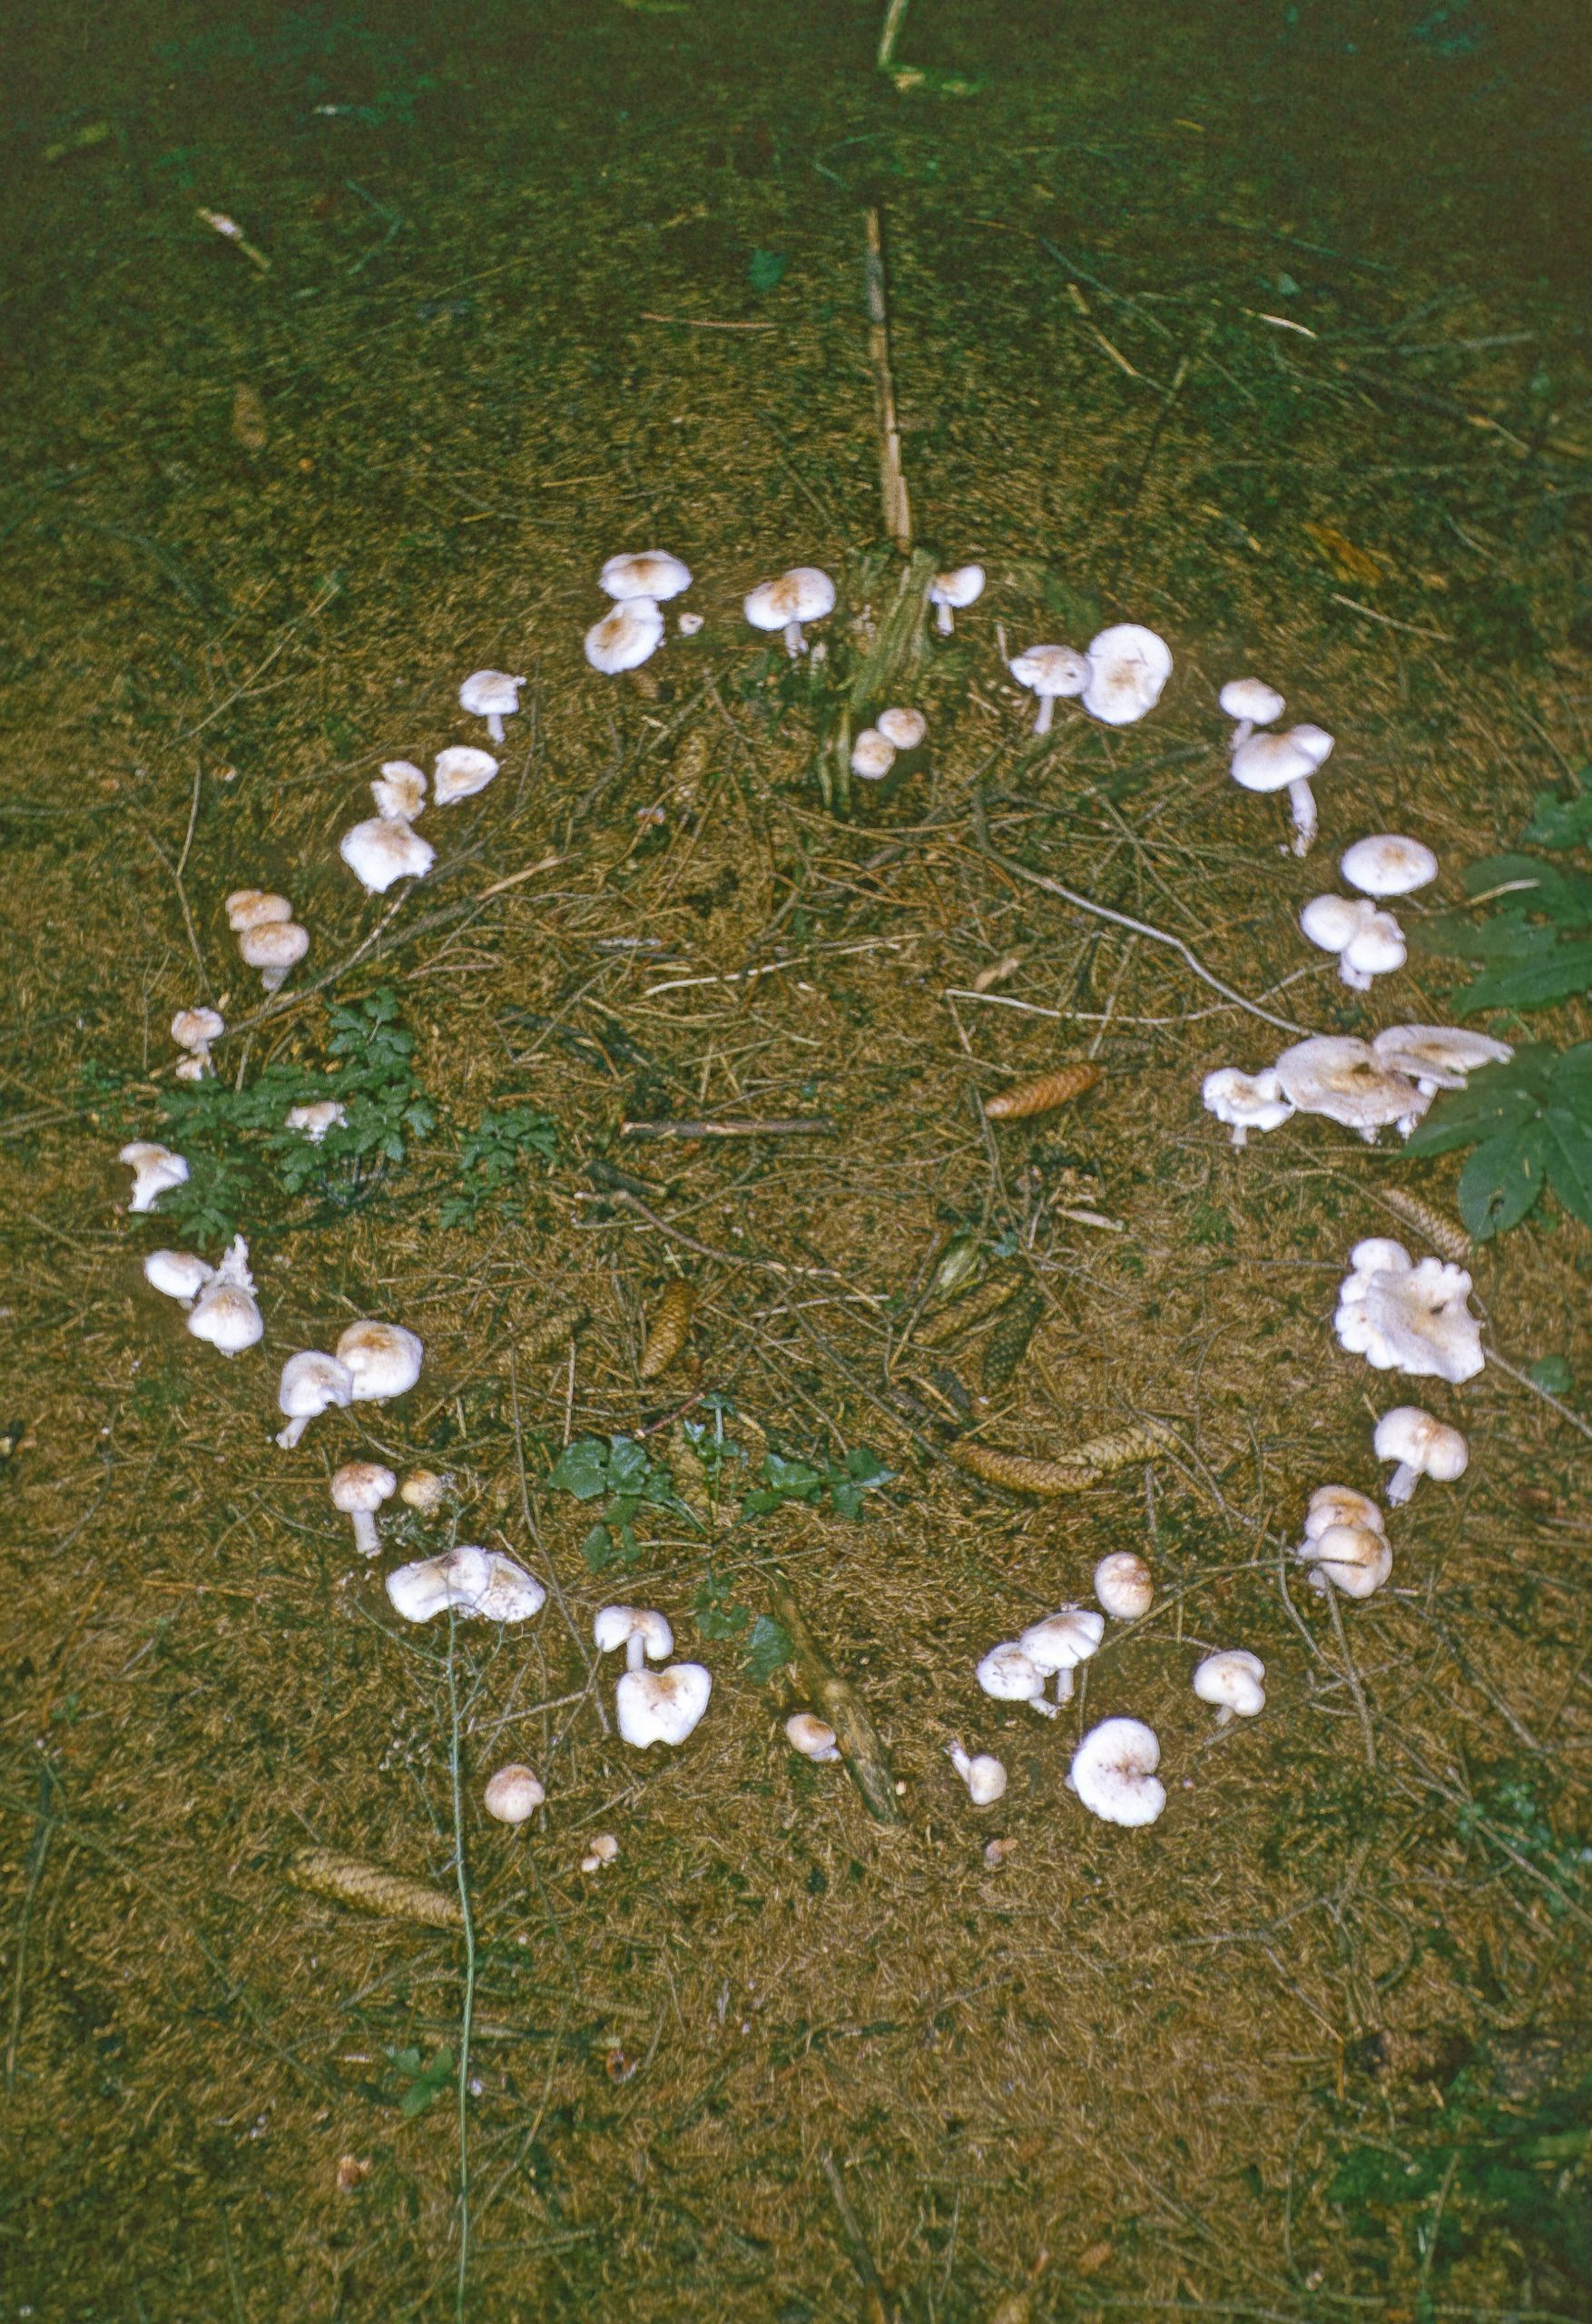 pilze im rasen beim hexenring wachsen schaedlinge in einer bestimmten form auf dem boden